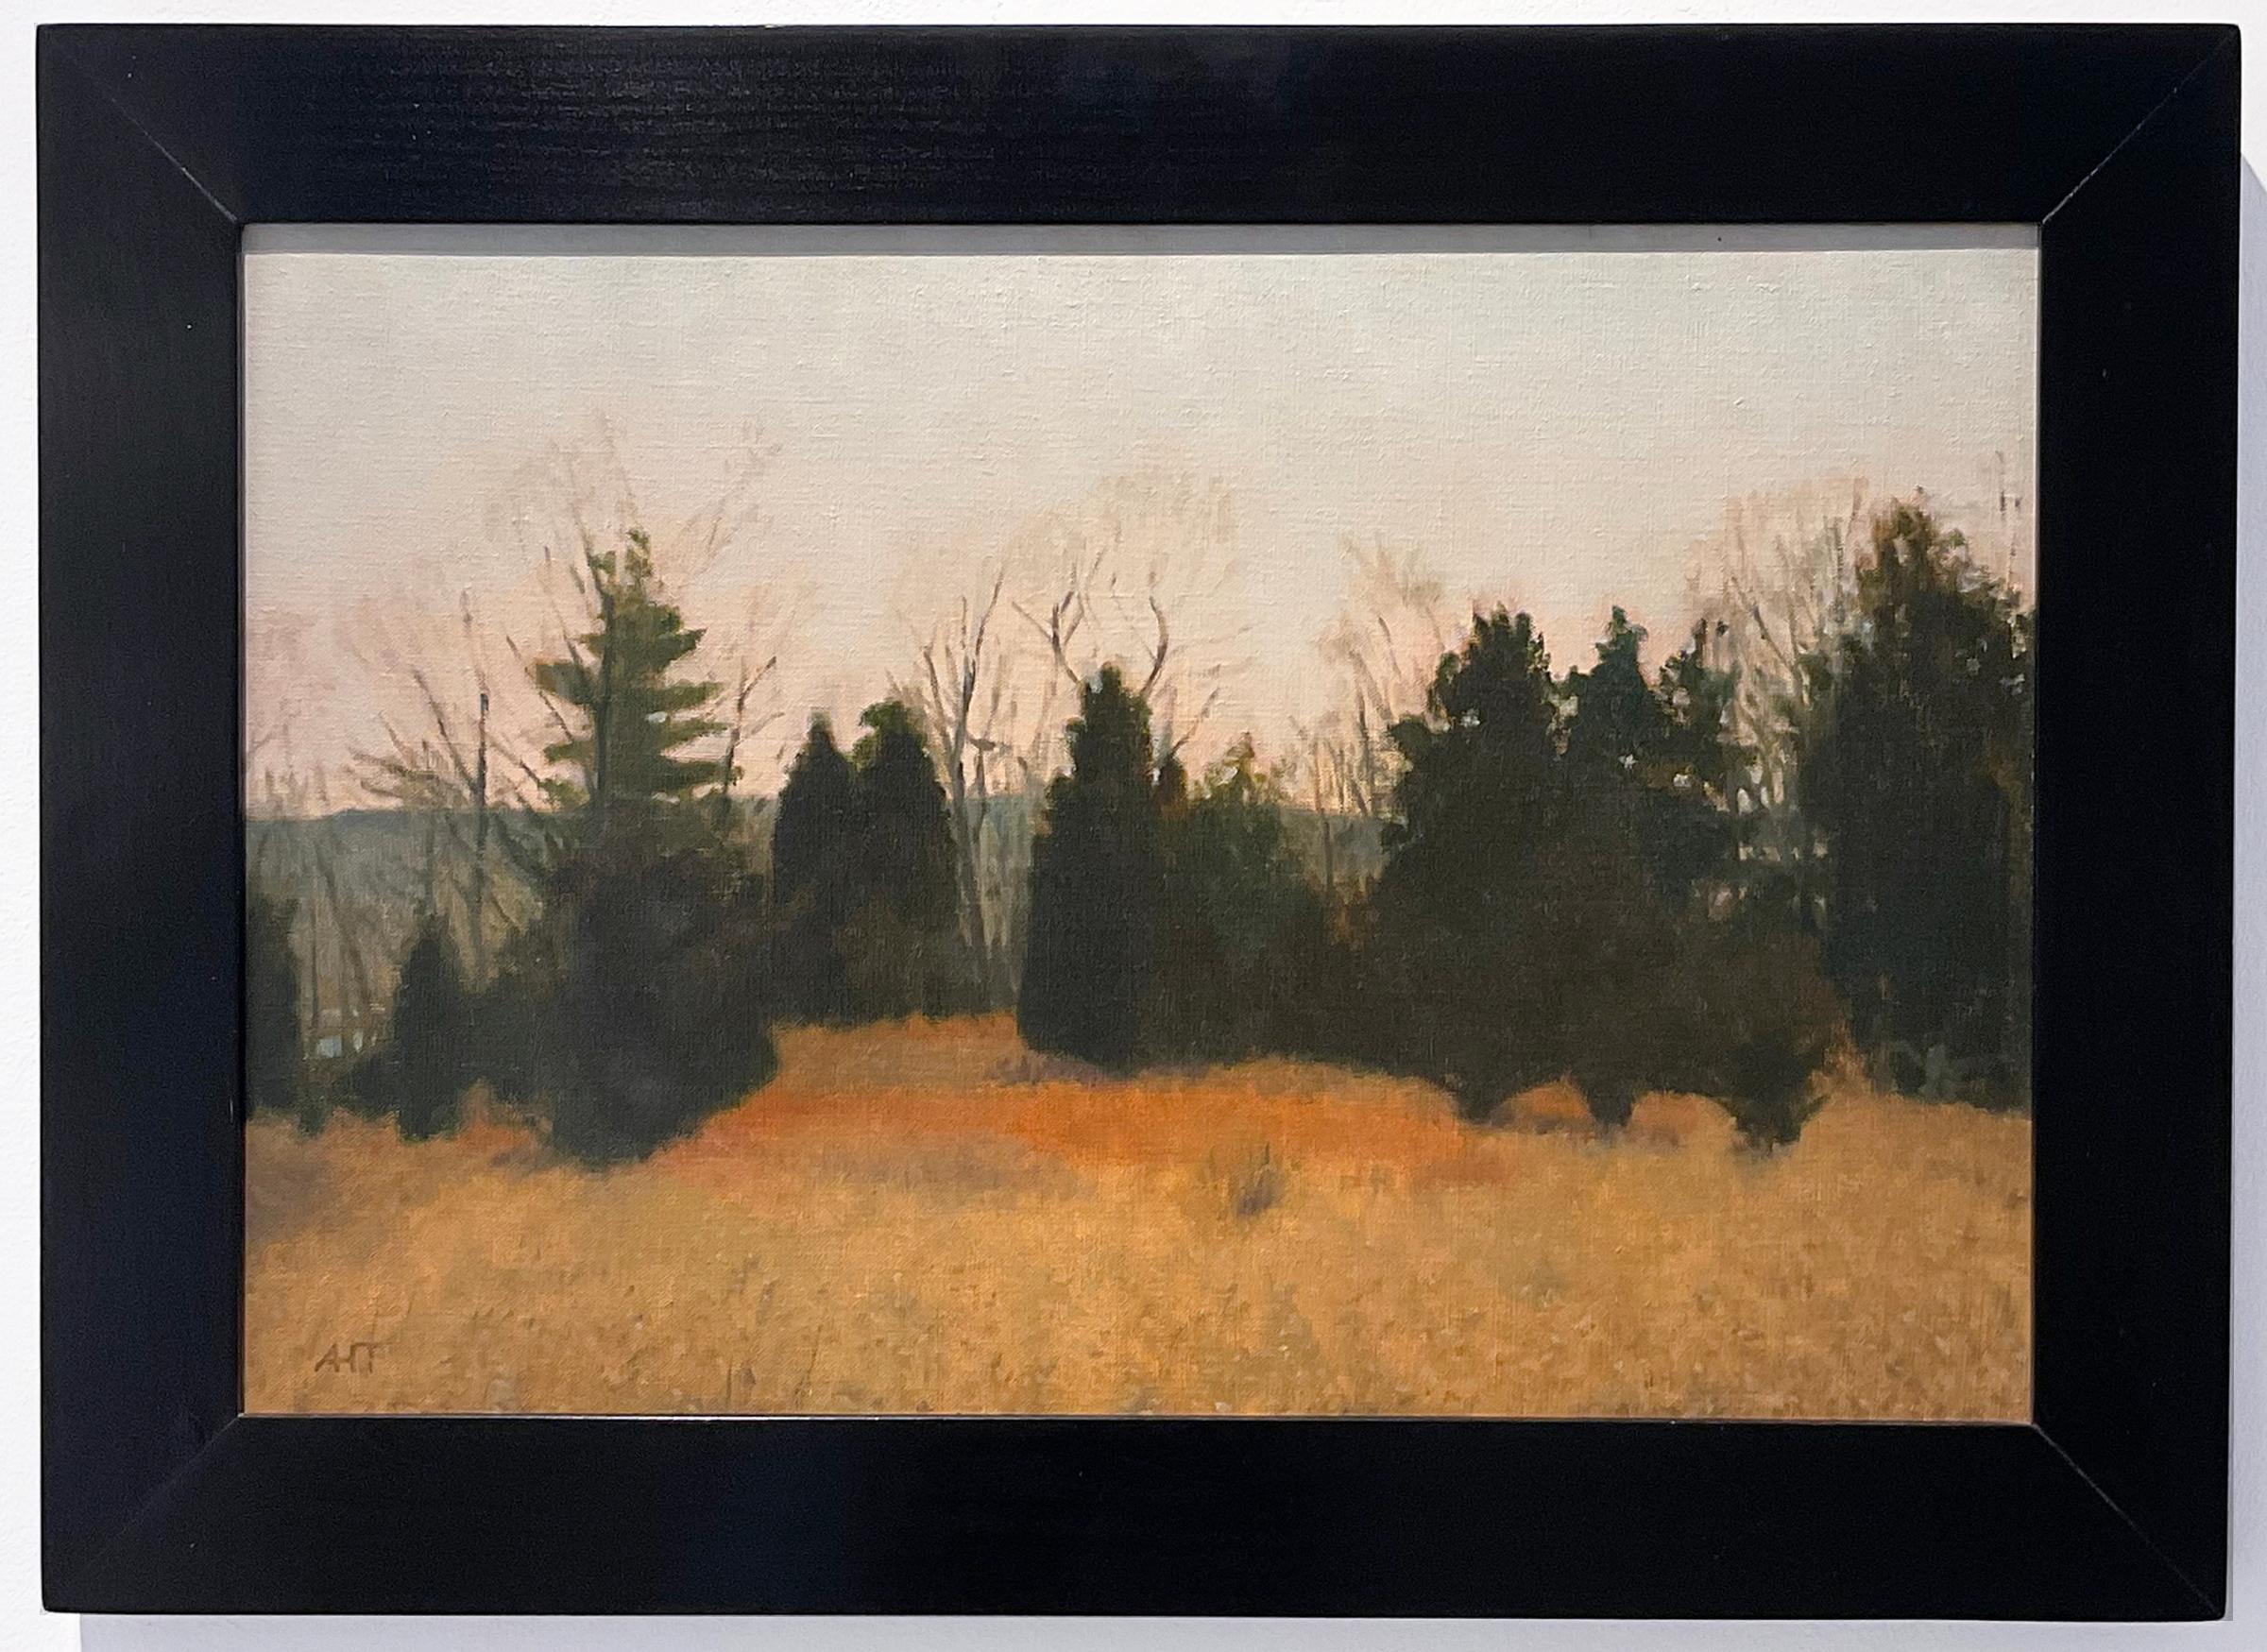 Zedernholz, Greenport ( Zeitgenössisches Winterlandschaftsgemälde, gerahmt) – Painting von Unknown